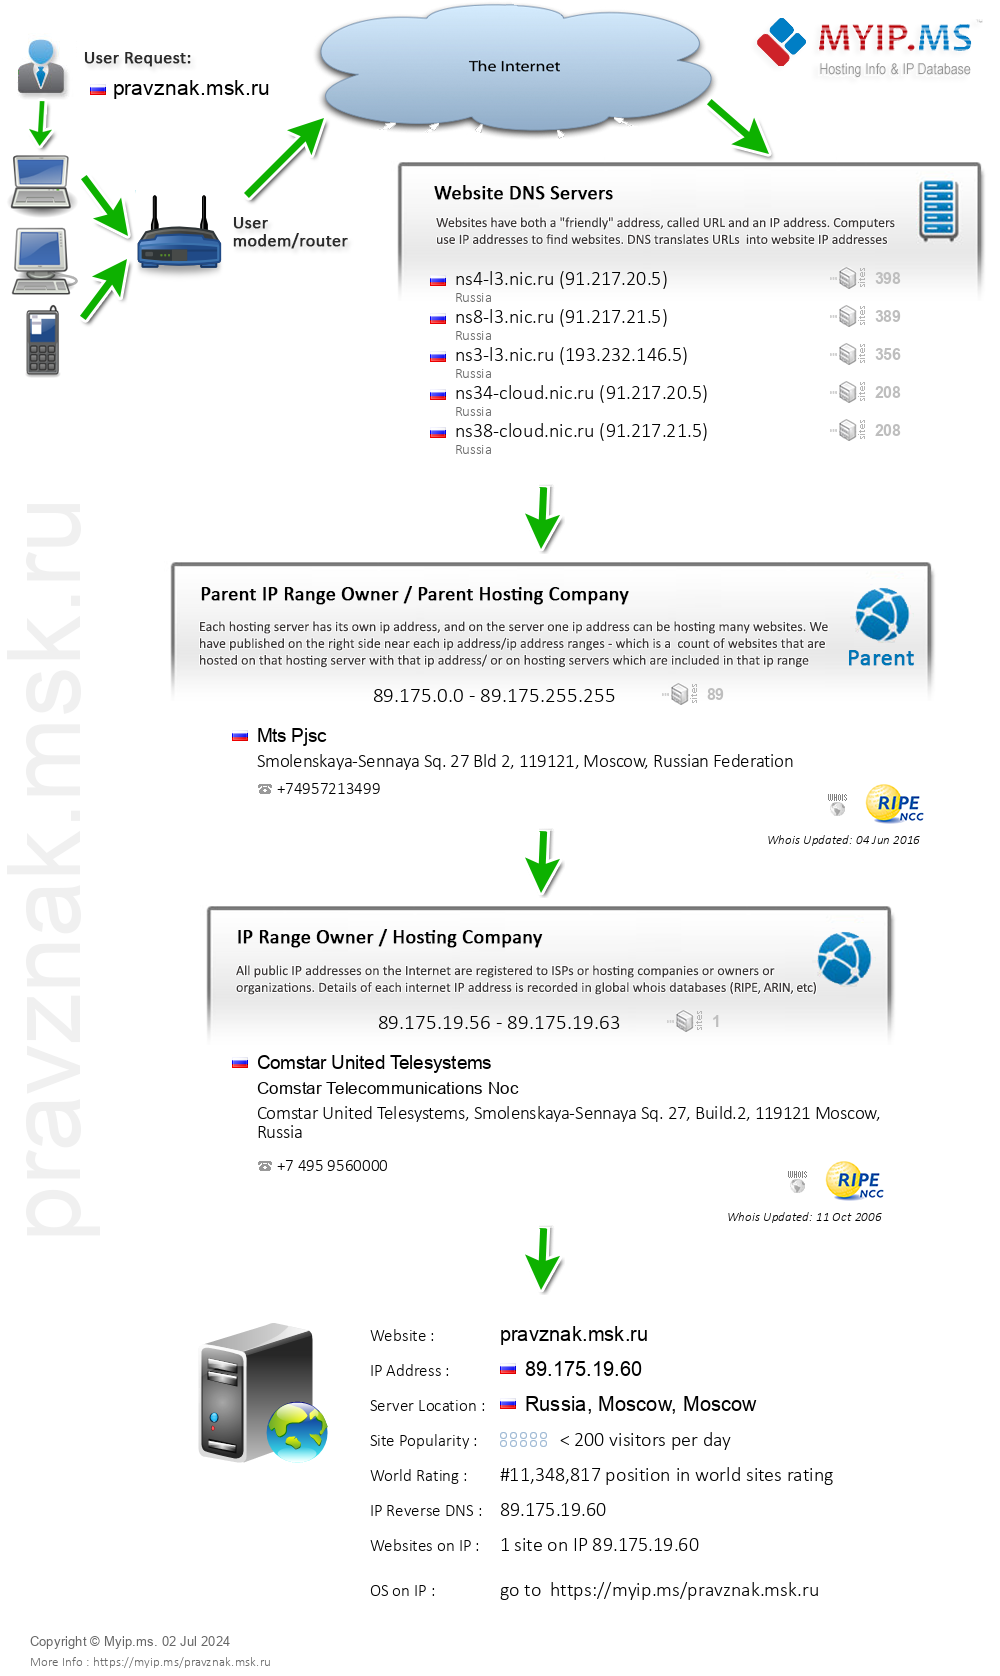 Pravznak.msk.ru - Website Hosting Visual IP Diagram